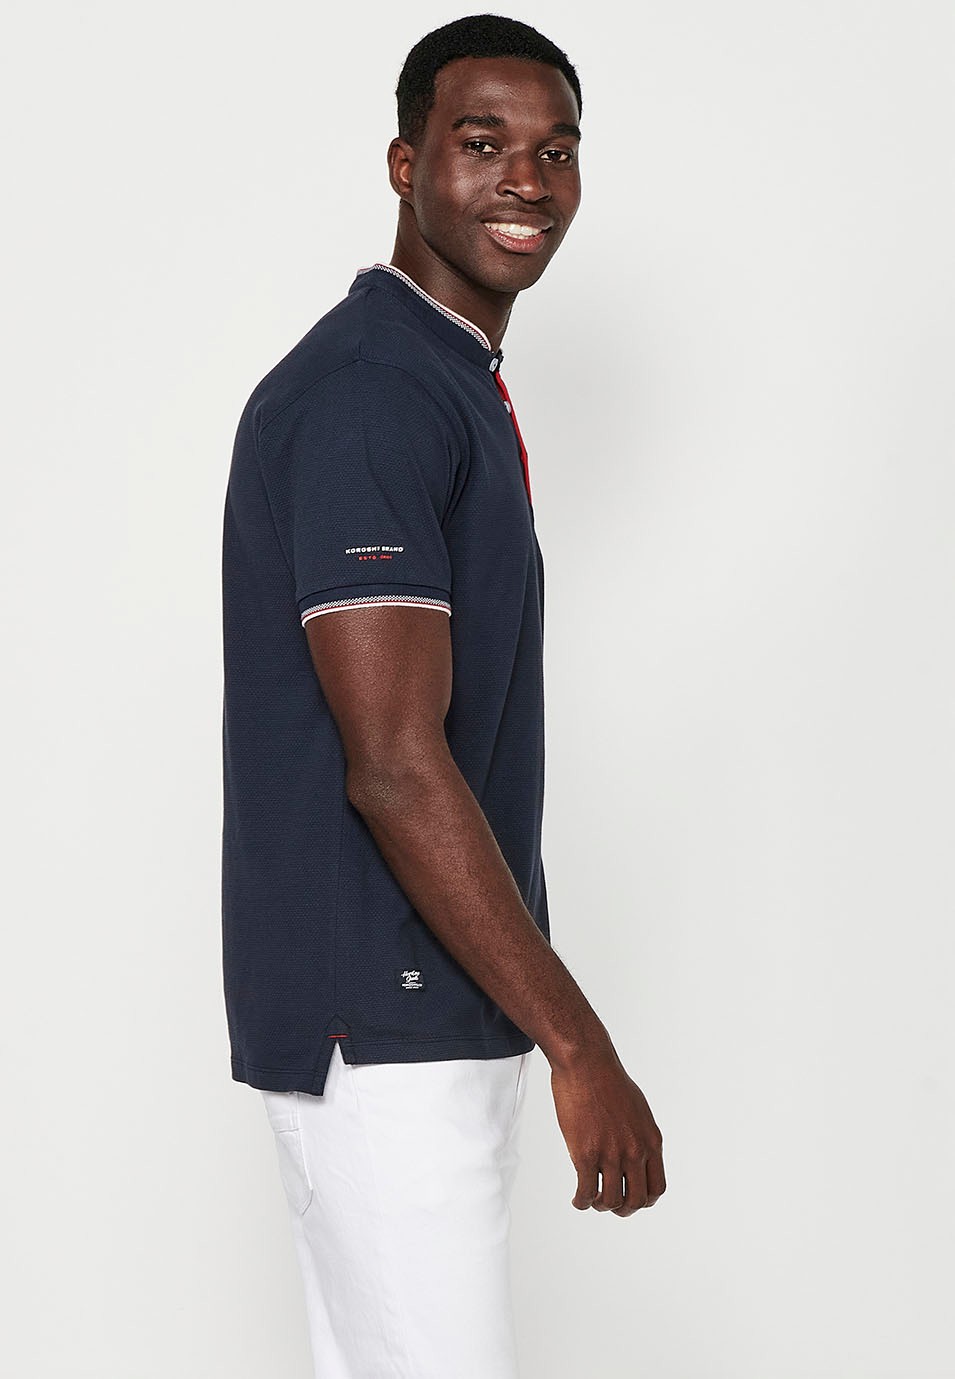 Kurzärmeliges Baumwoll-Poloshirt mit geripptem Finish, Rundhalsausschnitt, geknöpfter Öffnung und strukturierten Seitenschlitzen in der Farbe Marineblau für Herren 5